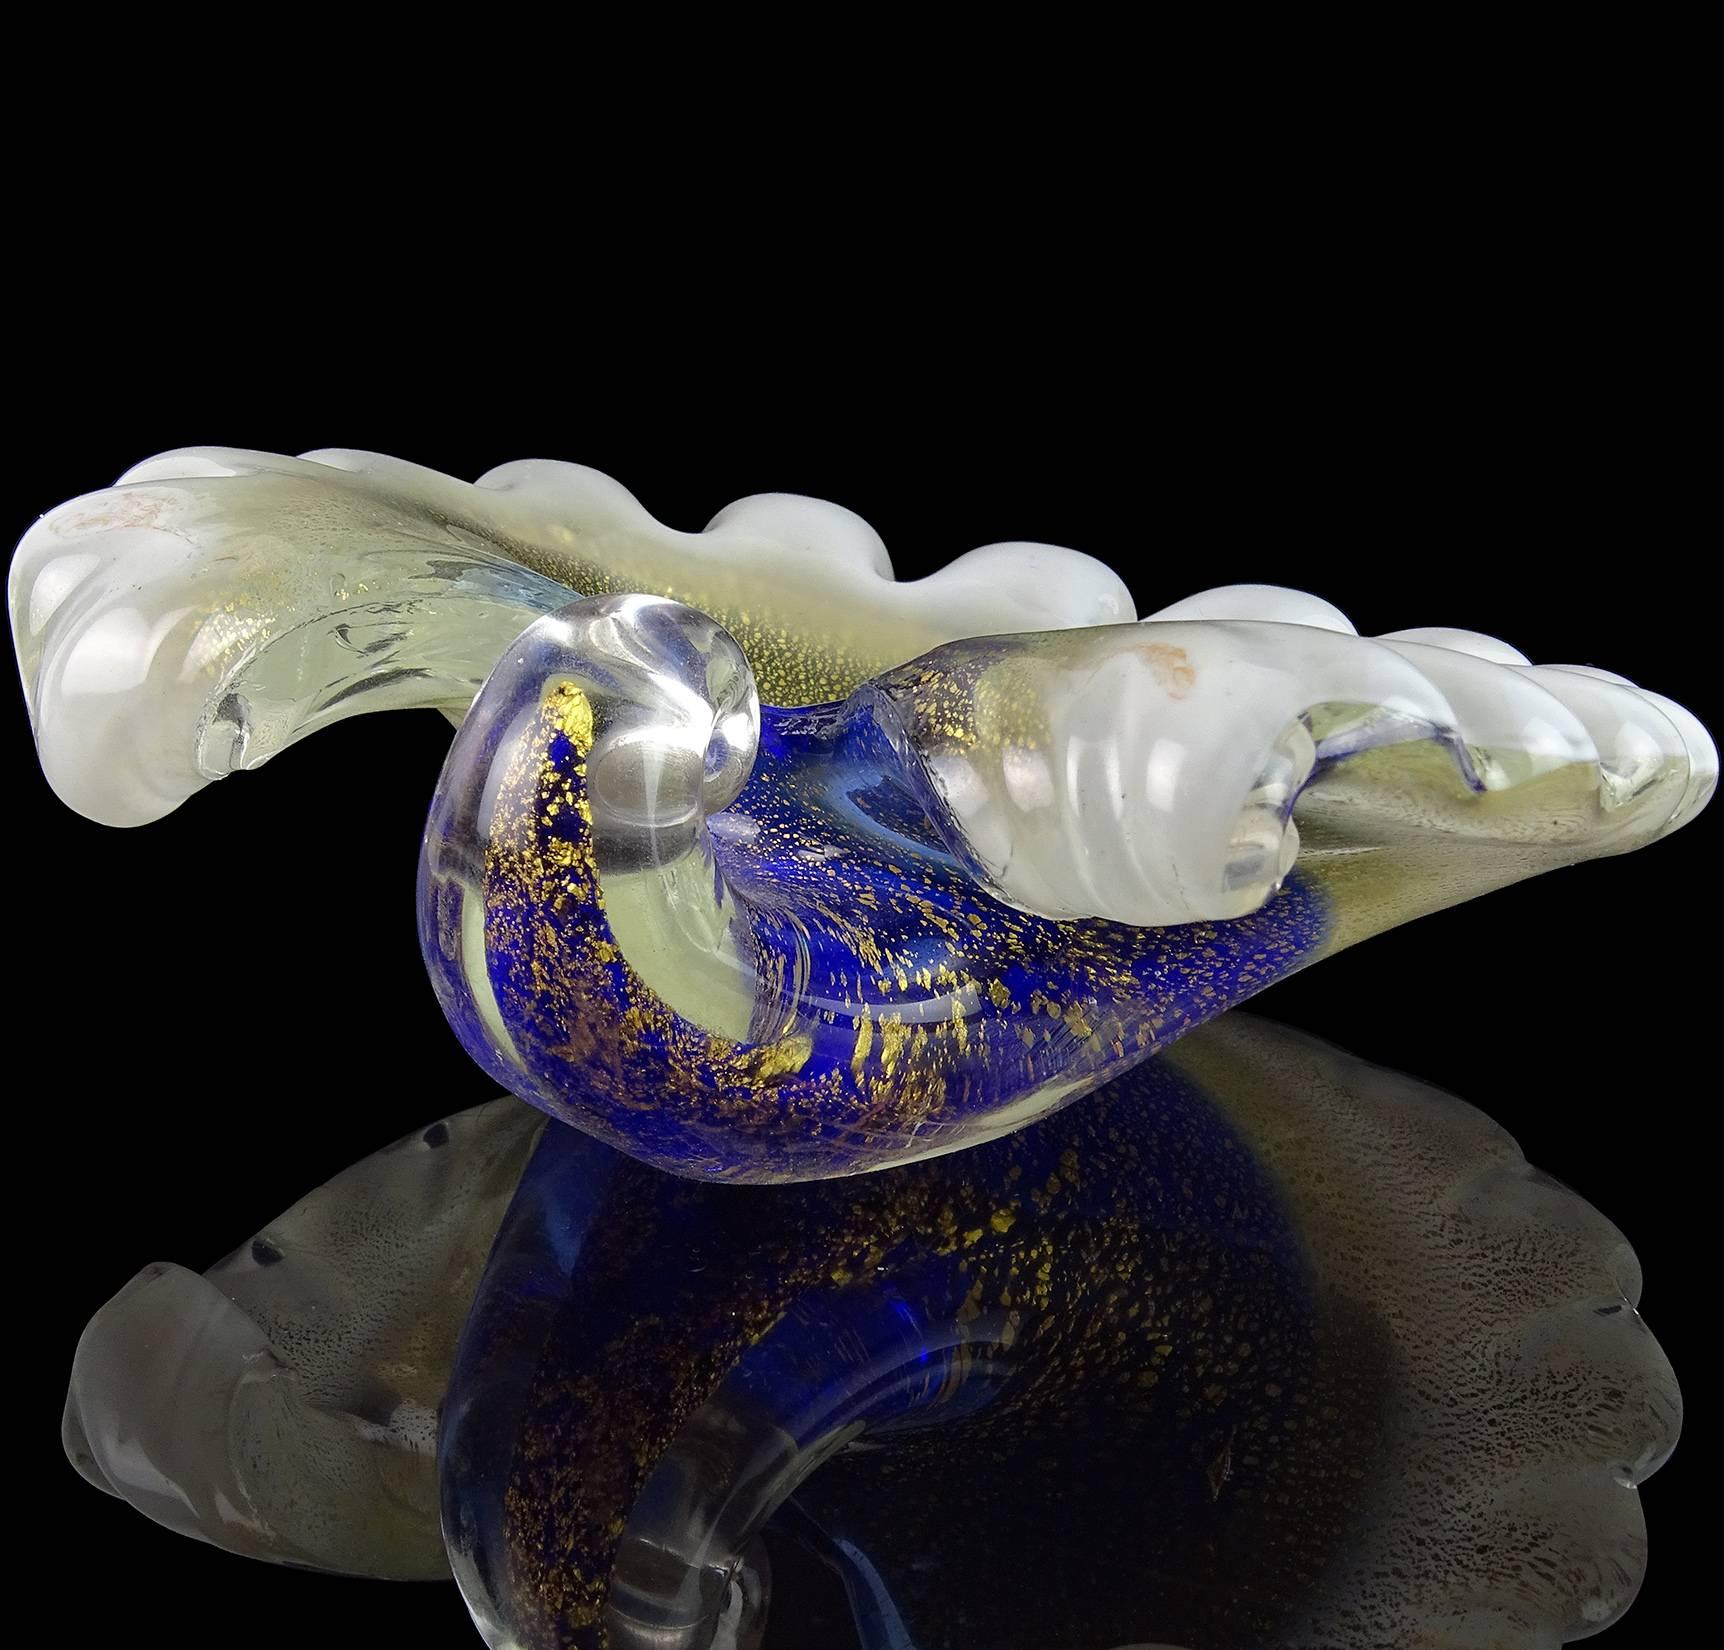 Magnifique bol/sculpture vintage en verre soufflé à la main de Murano en forme de coquillage bleu, blanc et mouchetures d'or. Créé à la manière de l'entreprise Barovier e Toso. Il est abondamment recouvert de feuilles d'or à l'extérieur. Peut être